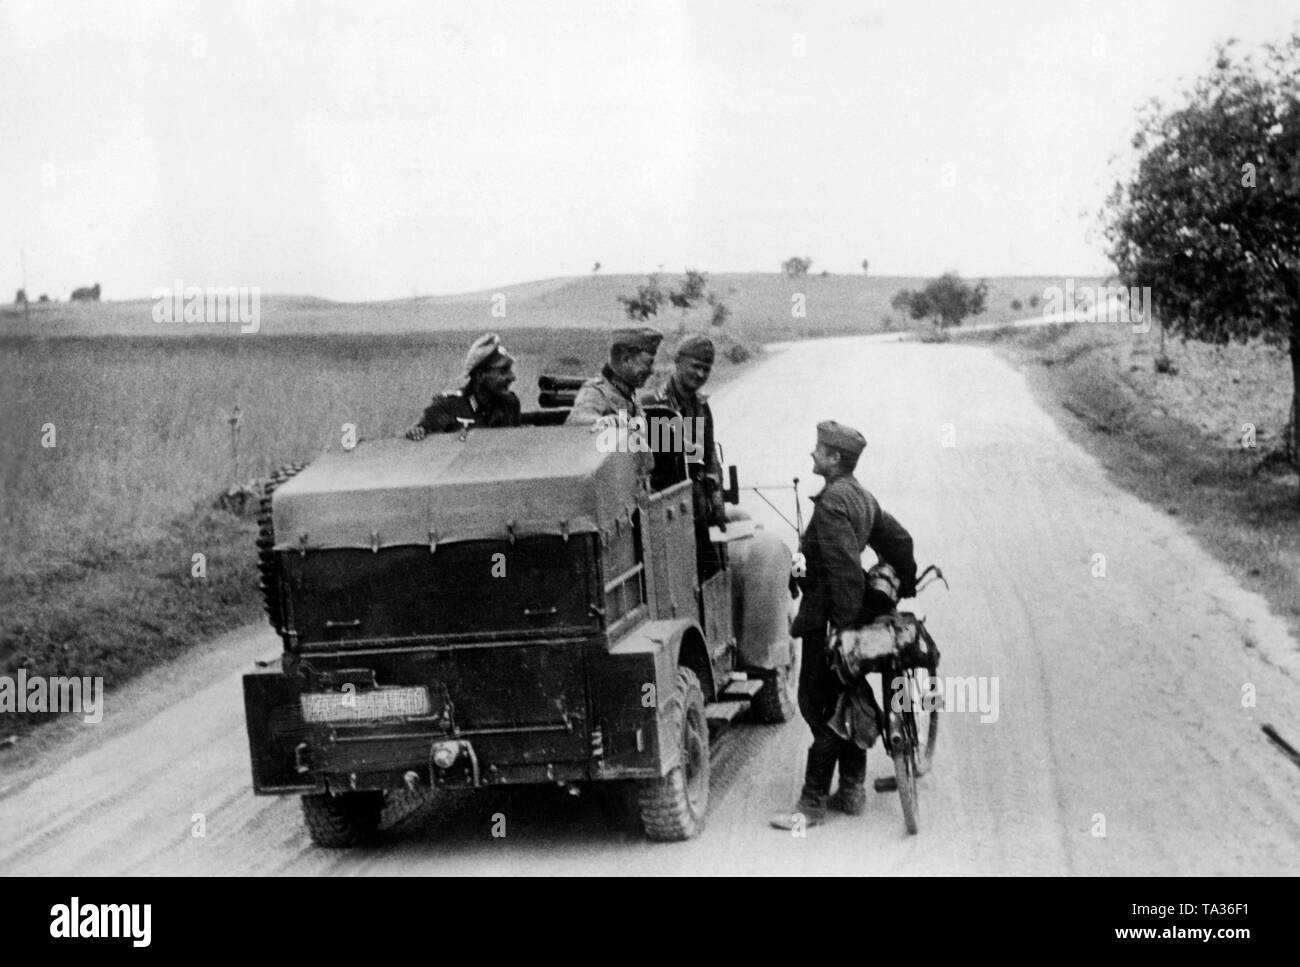 Un veicolo militare poco dopo l'inizio della guerra German-Soviet. Nel centro del veicolo un generale della Wehrmacht, sulla destra un soldato con la bicicletta. A Grotke. Foto: reporter di guerra Wiesemann. Foto Stock